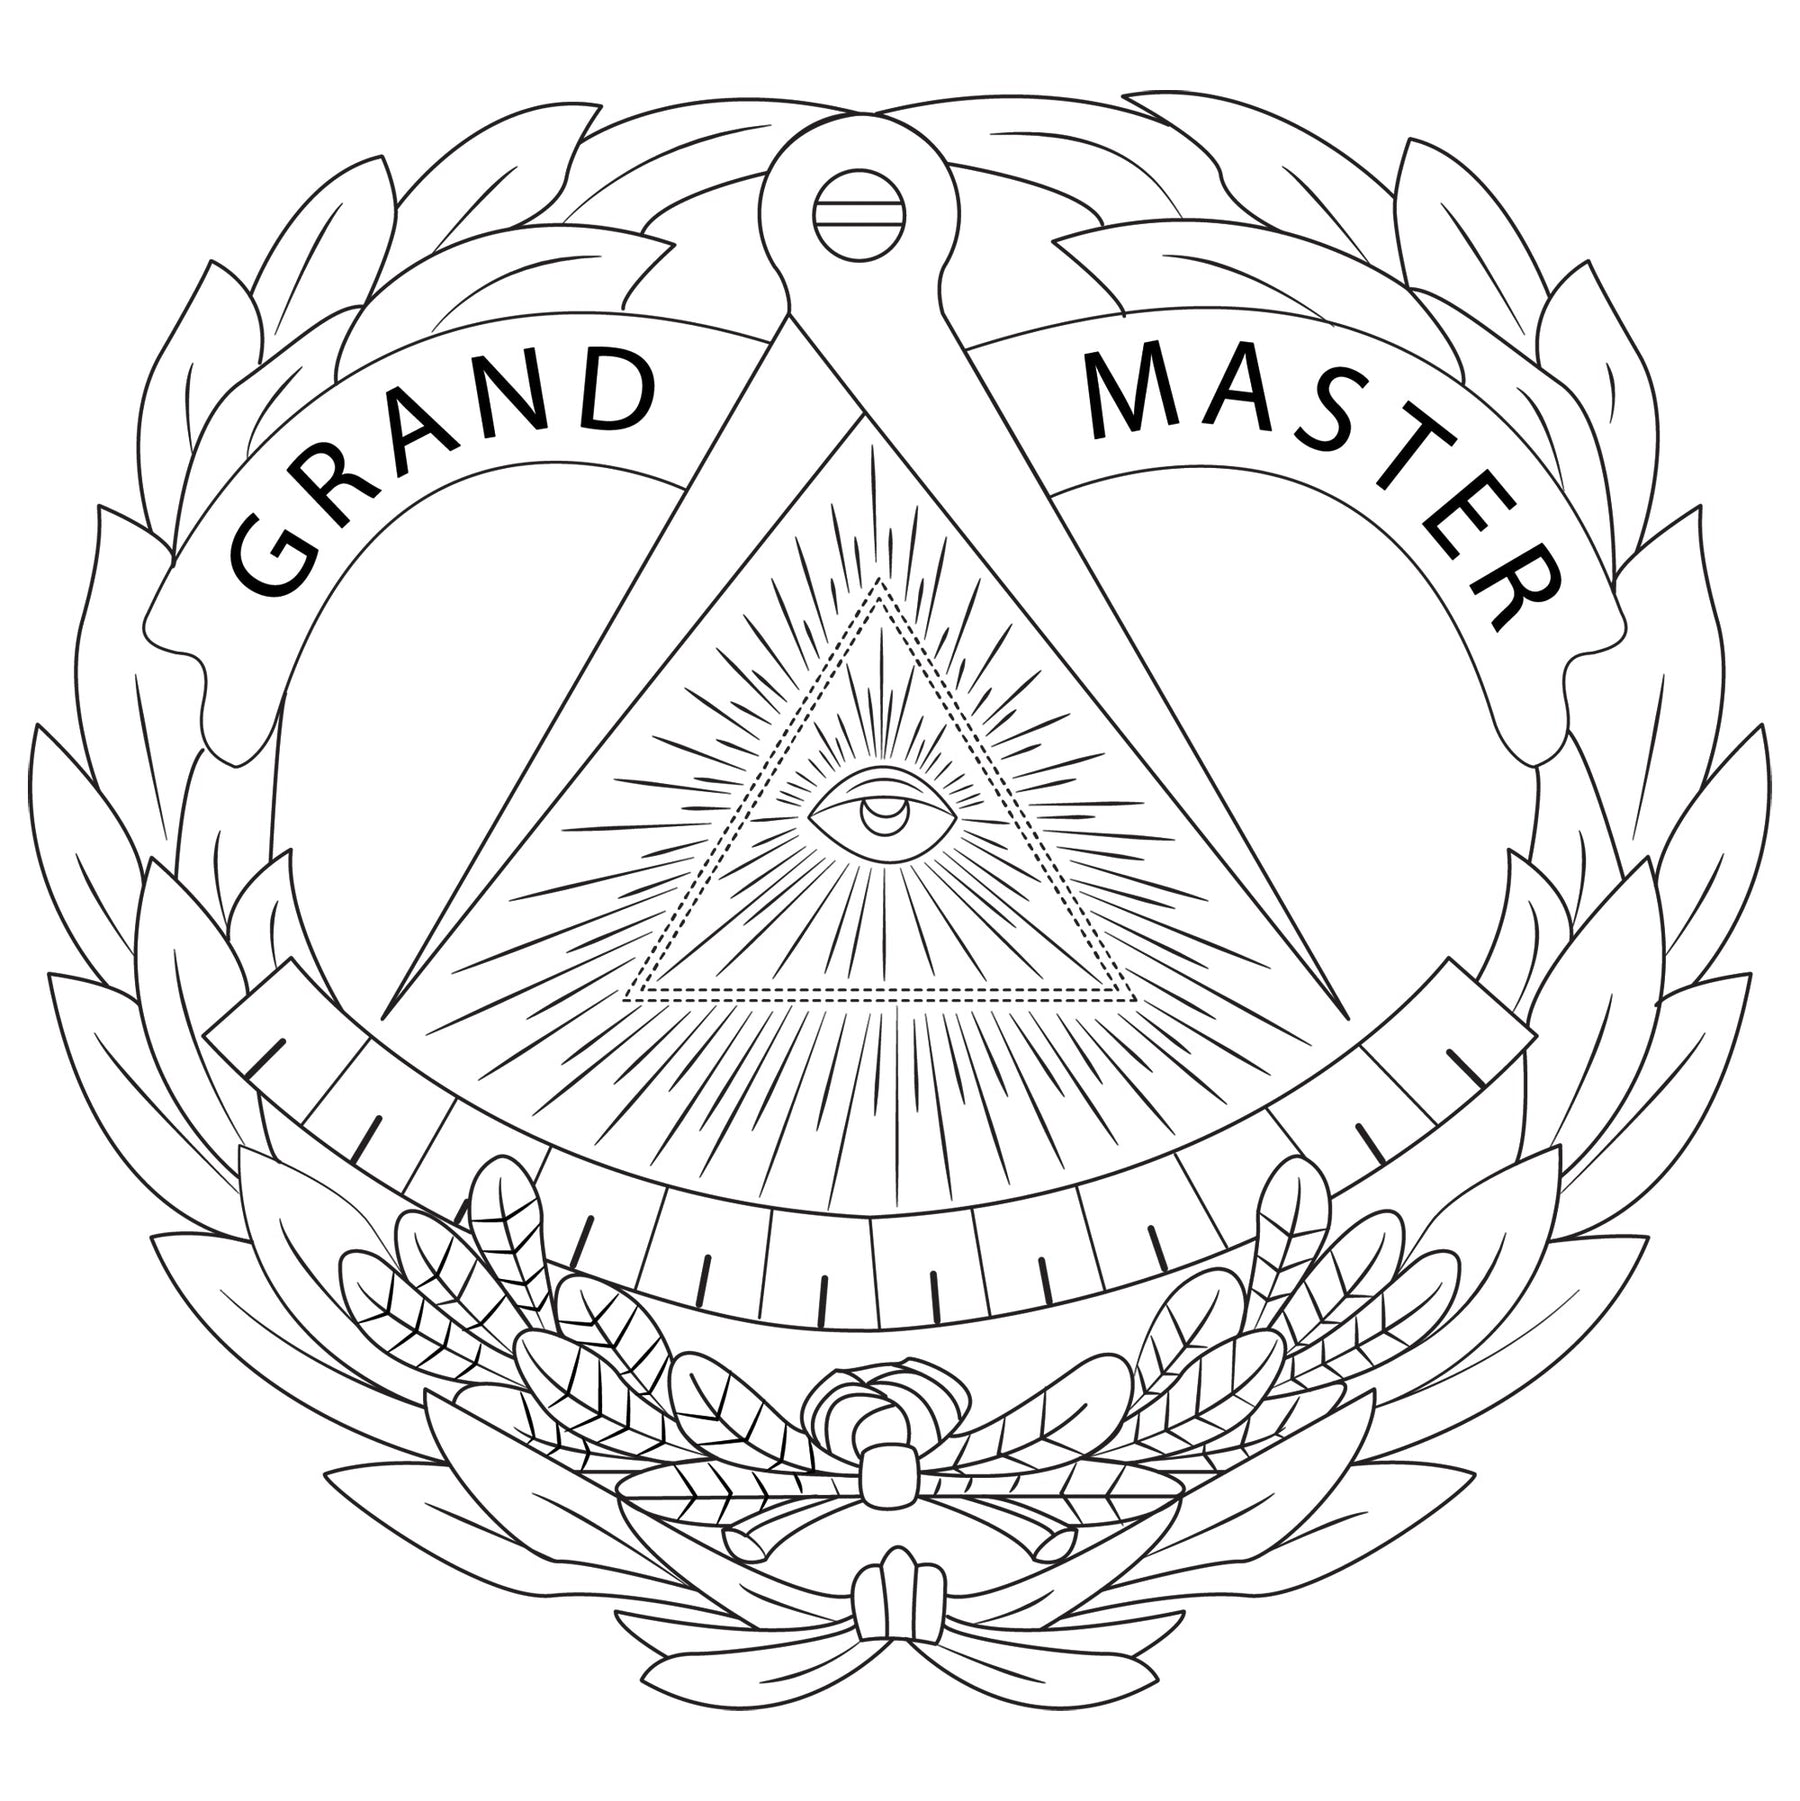 Grand Master Blue Lodge USB Flash Drives - Various Wood Colors - Bricks Masons